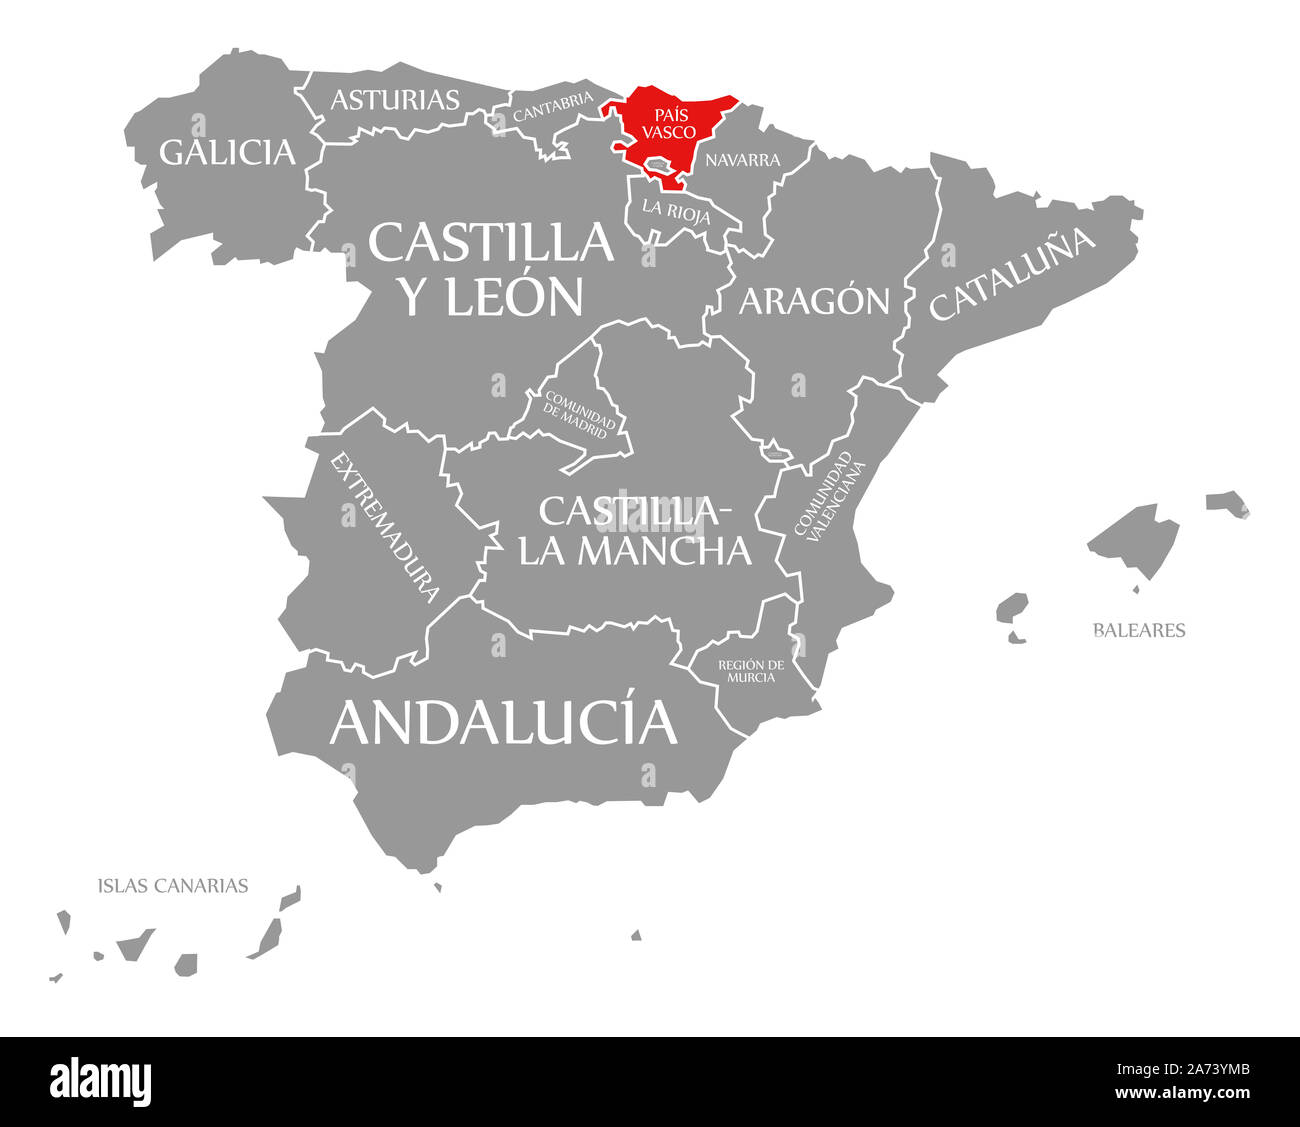 Mapa del país vasco fotografías e imágenes de alta resolución - Alamy